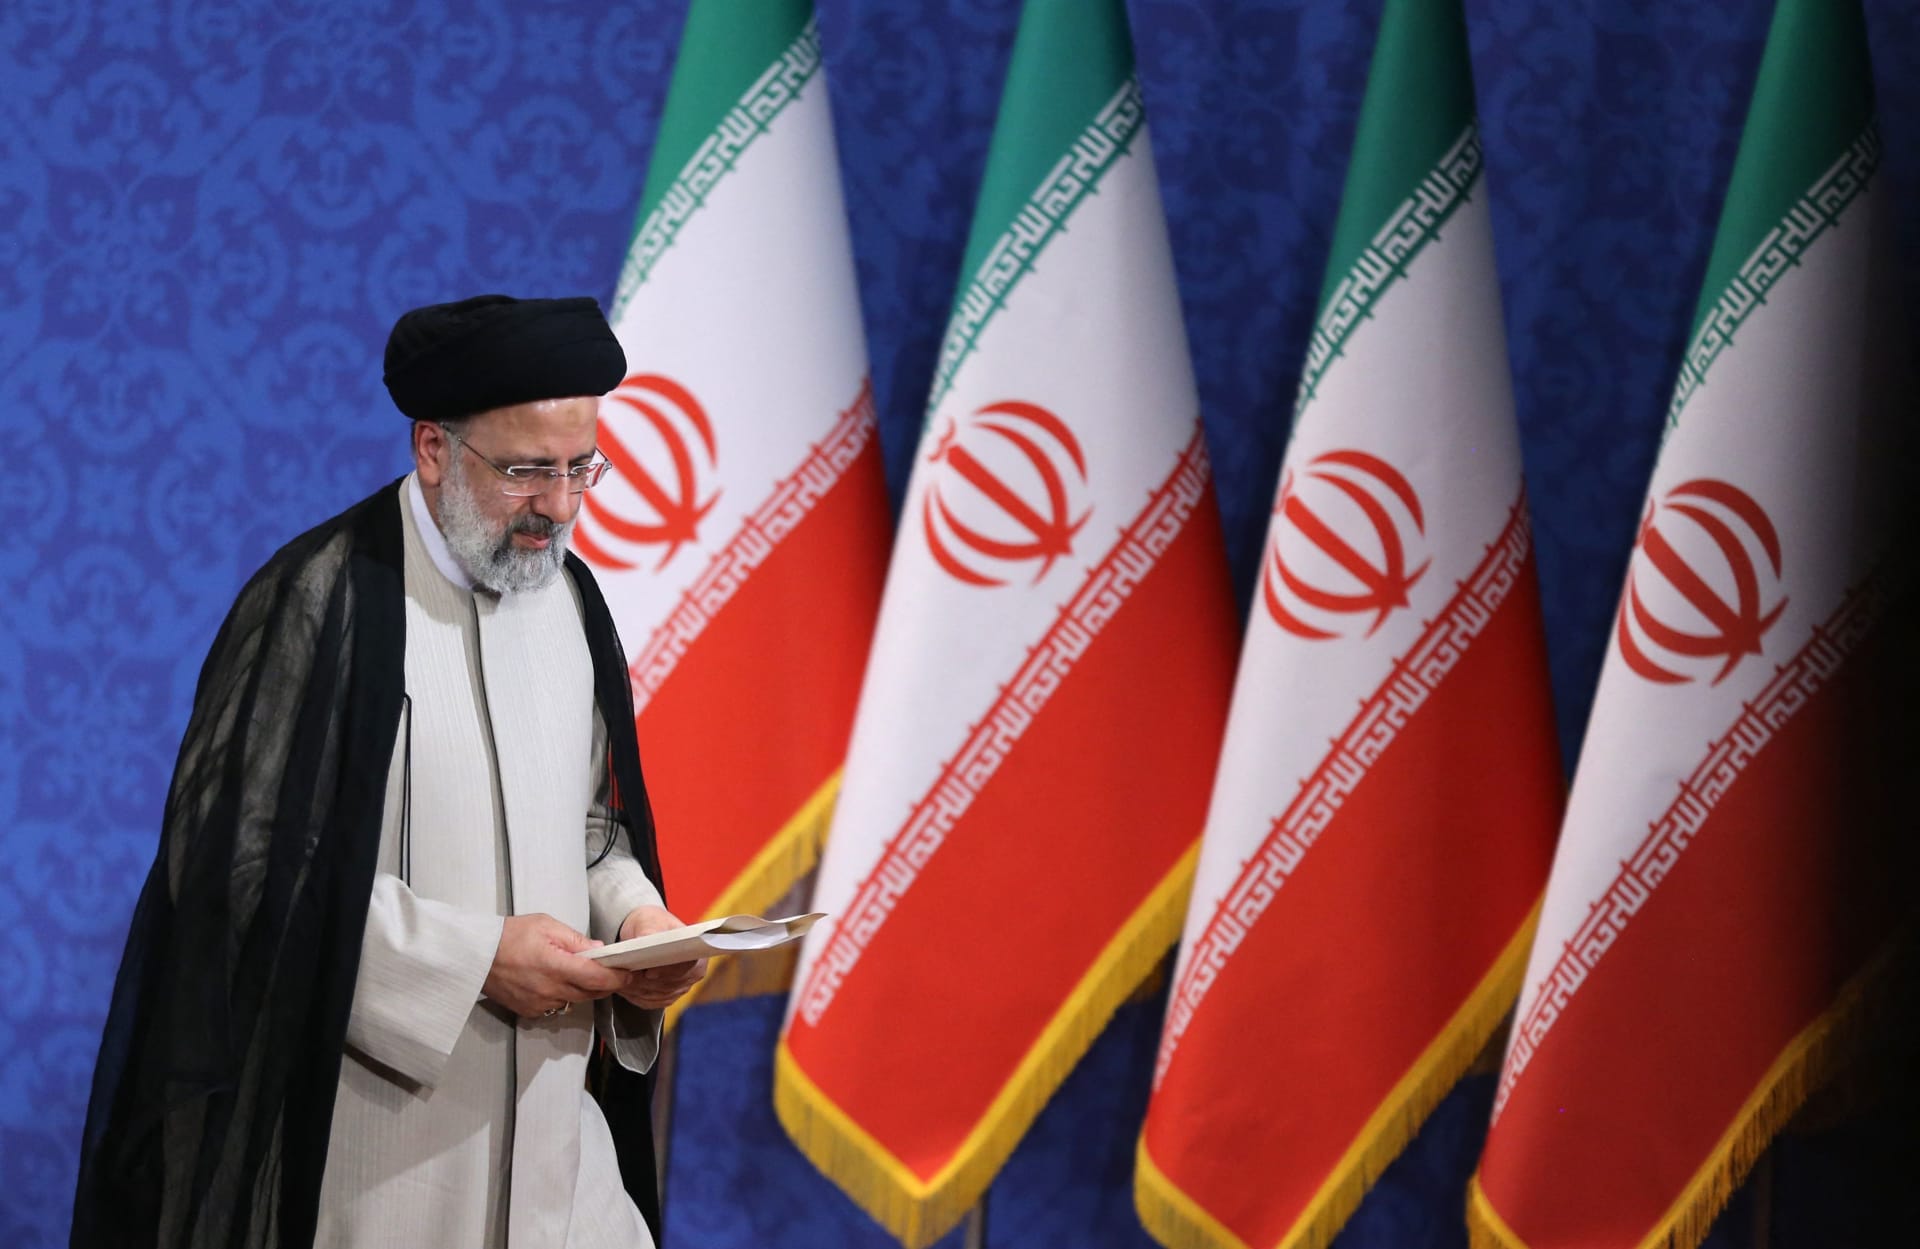 بعد تصريح "سنحرر إيران قريبا".. رئيسي يرد على بايدن: لن نكون بقرتك الحلوب